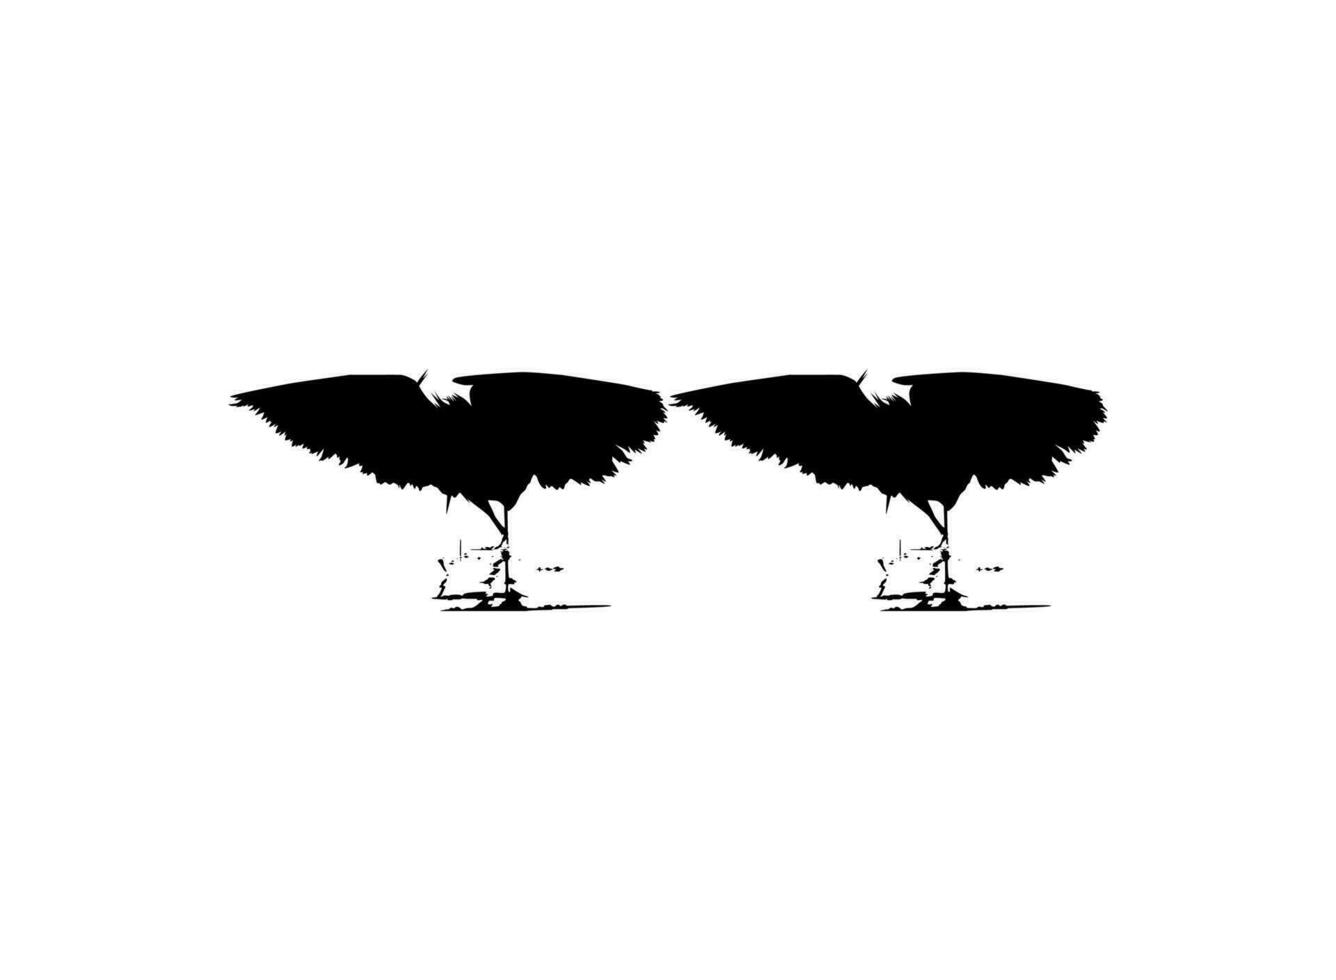 par av de svart häger fågel, egretta ardesiaca, också känd som de svart häger silhuett för konst illustration, logotyp, piktogram, hemsida, eller grafisk design element. vektor illustration